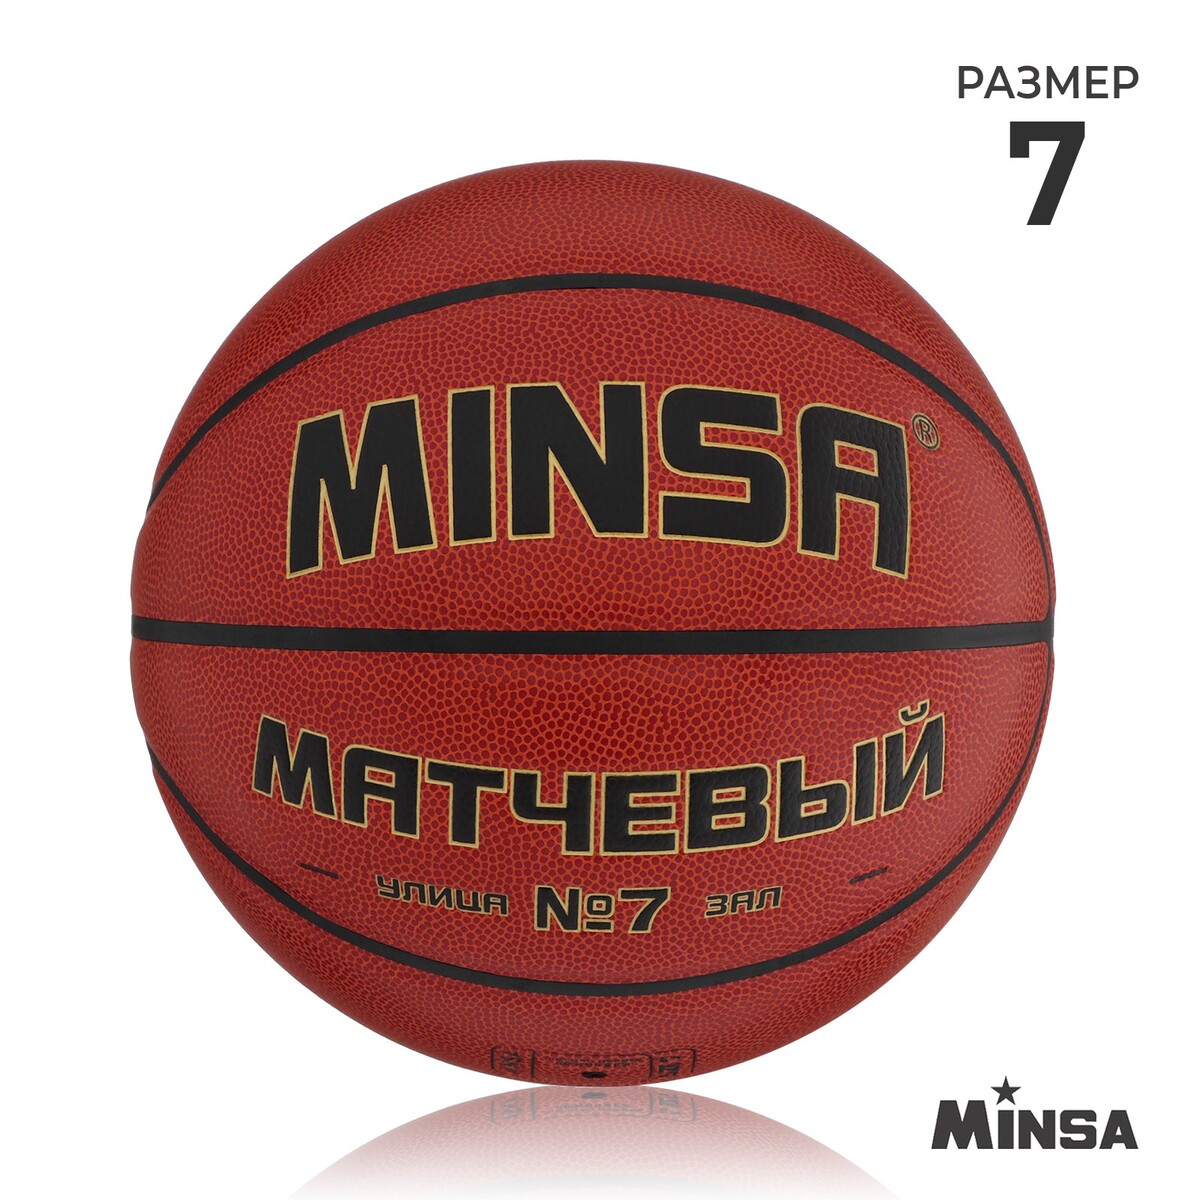 Баскетбольный мяч minsa, матчевый, microfiber pu, клееный, 8 панелей, р. 7 мяч баскетбольный minsa air power пвх клееный 8 панелей р 7